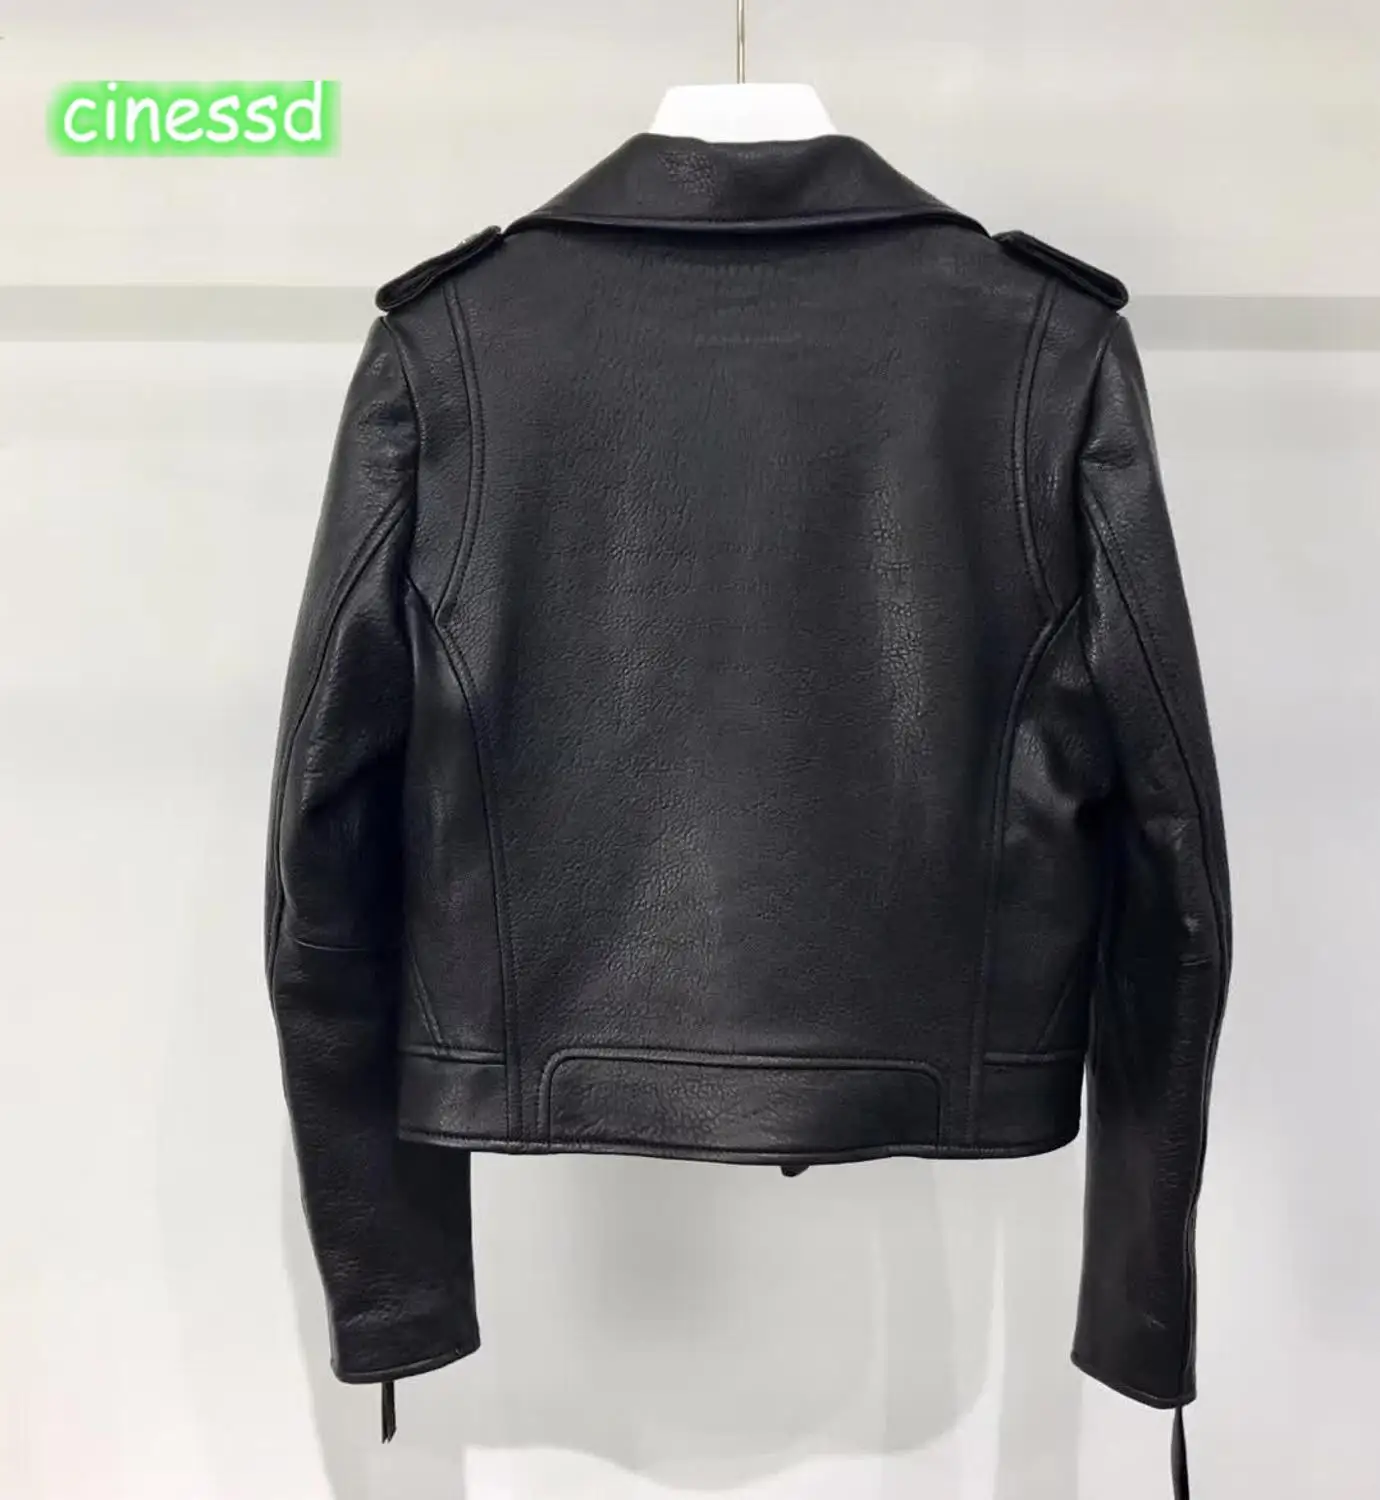 Cinessd новейшая Высококачественная аутентичная кожаная куртка модная повседневная Высококачественная женская одежда костюм локомотив